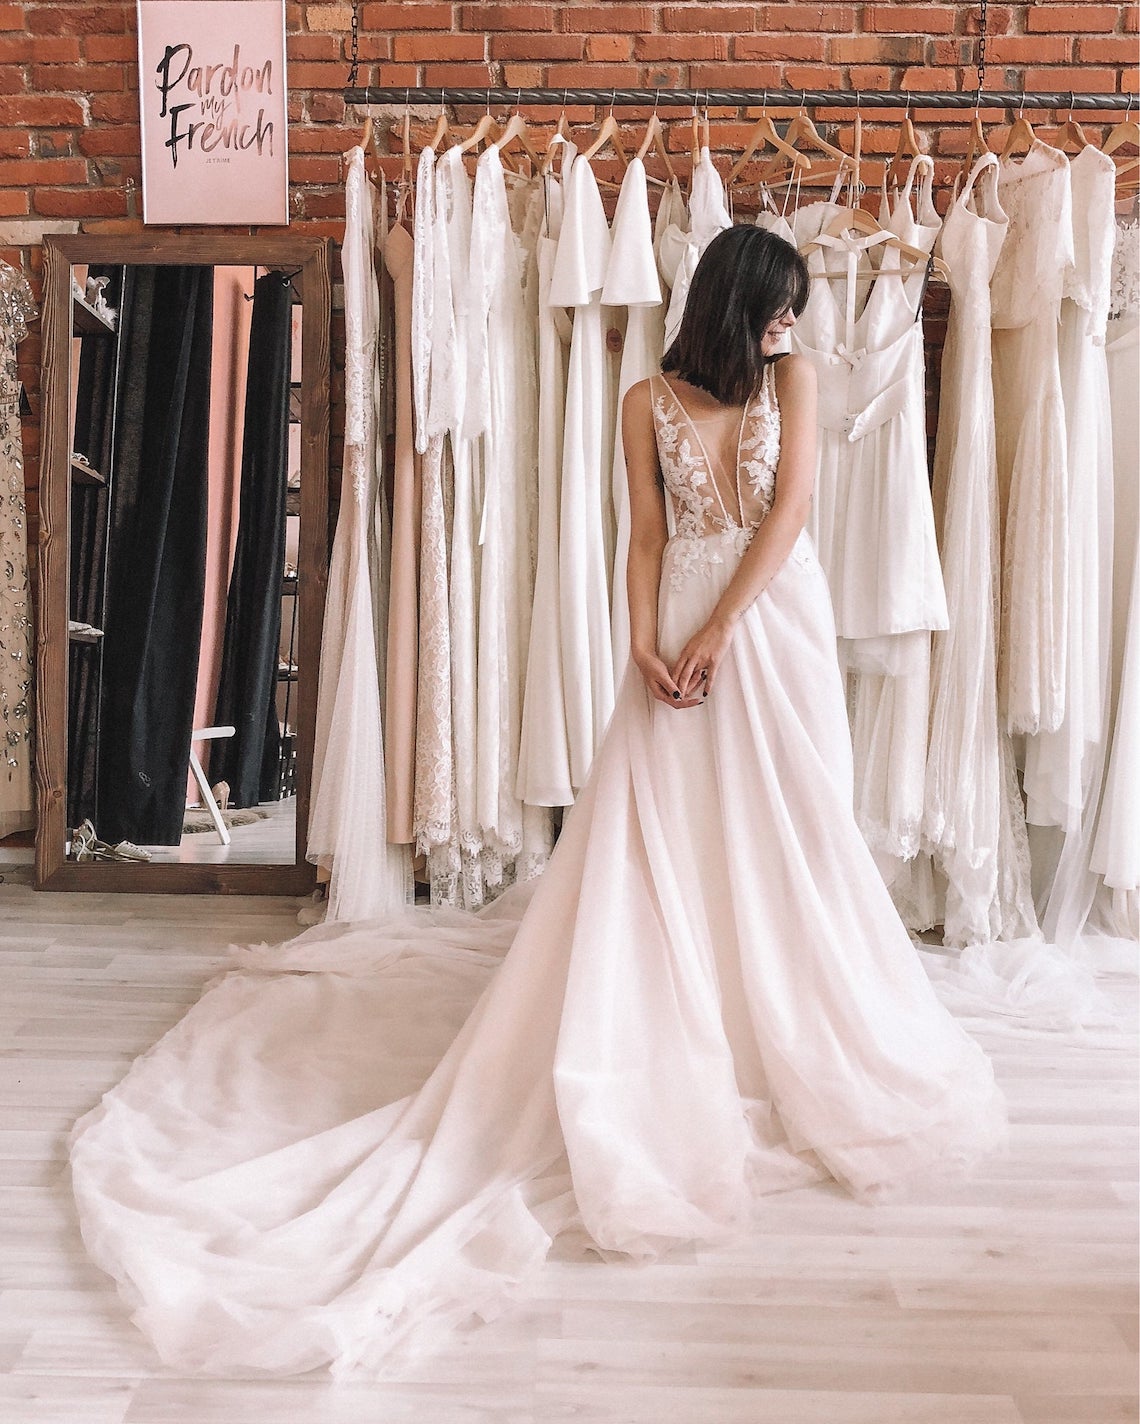 Boom Blush Best Pink Wedding Dresses for 2021 2022 Brides Bridal Musings - 30 chiếc áo dài cưới màu hồng dành cho cô dâu yêu thích sắc màu